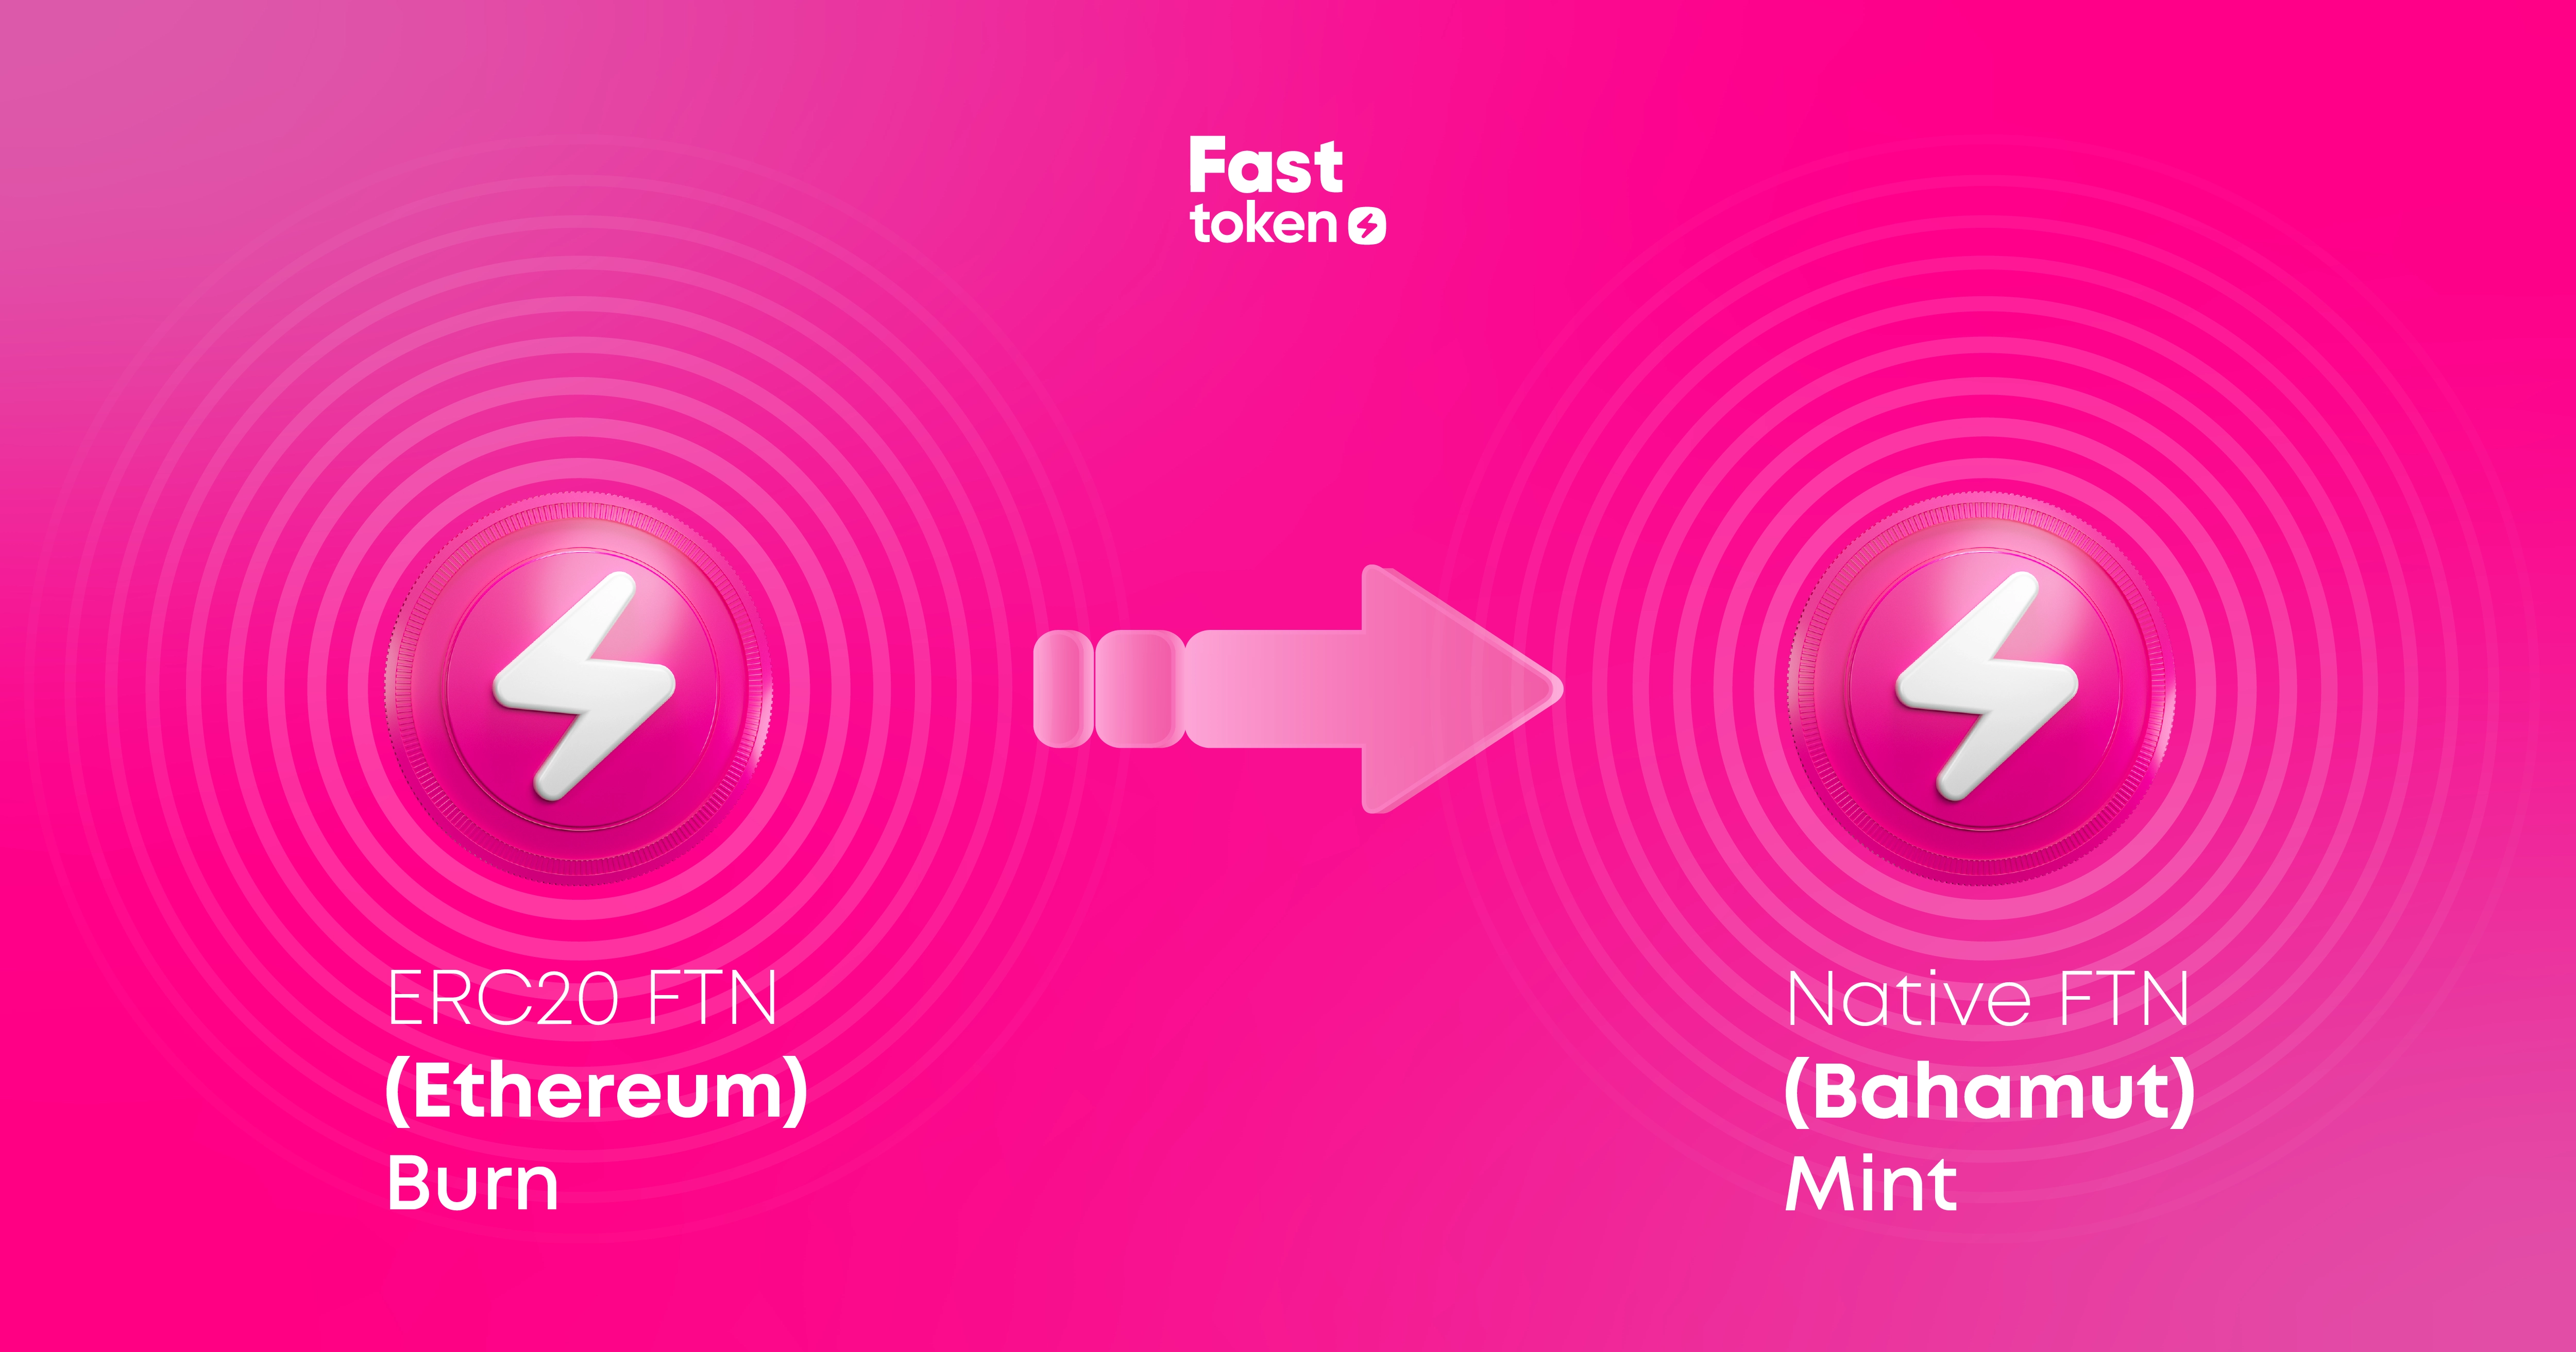 Fastex позволяет владельцам Fasttoken (FTN) переводить токены с блокчейна Ethereum на Fastex Chain